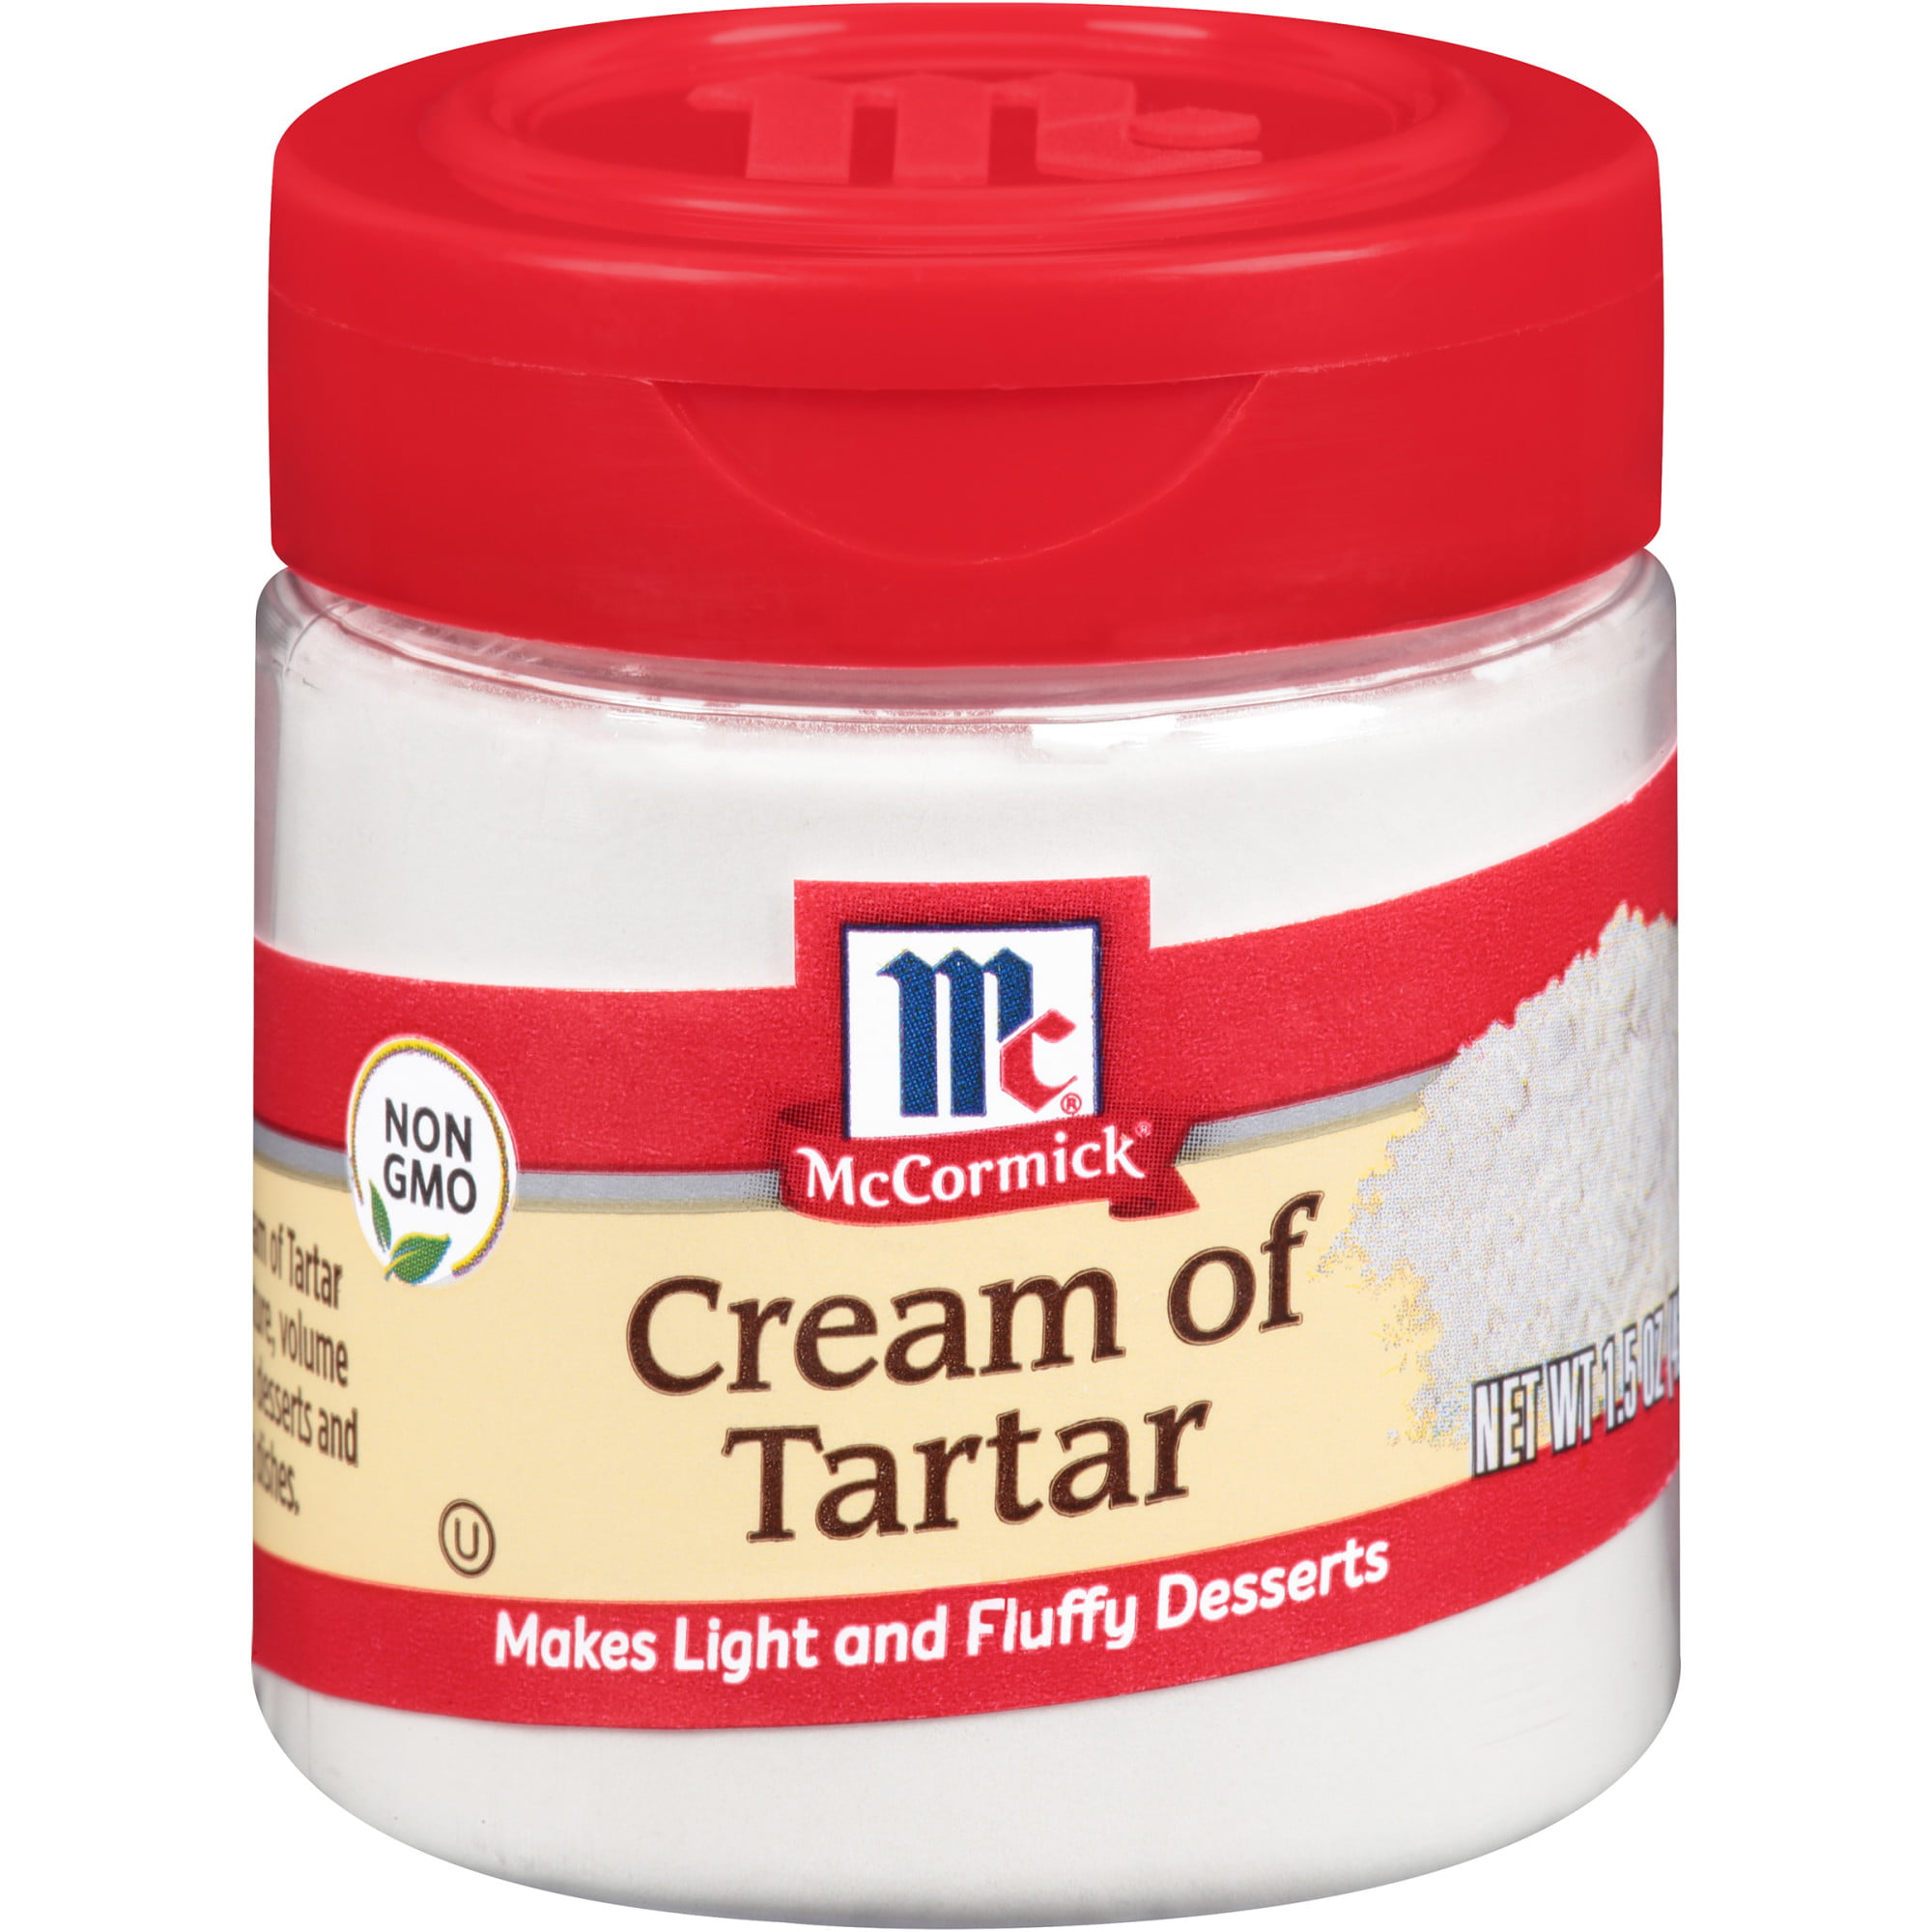 McCormick Cream Of Tartar, 1.5 oz - Walmart.com - Walmart.com